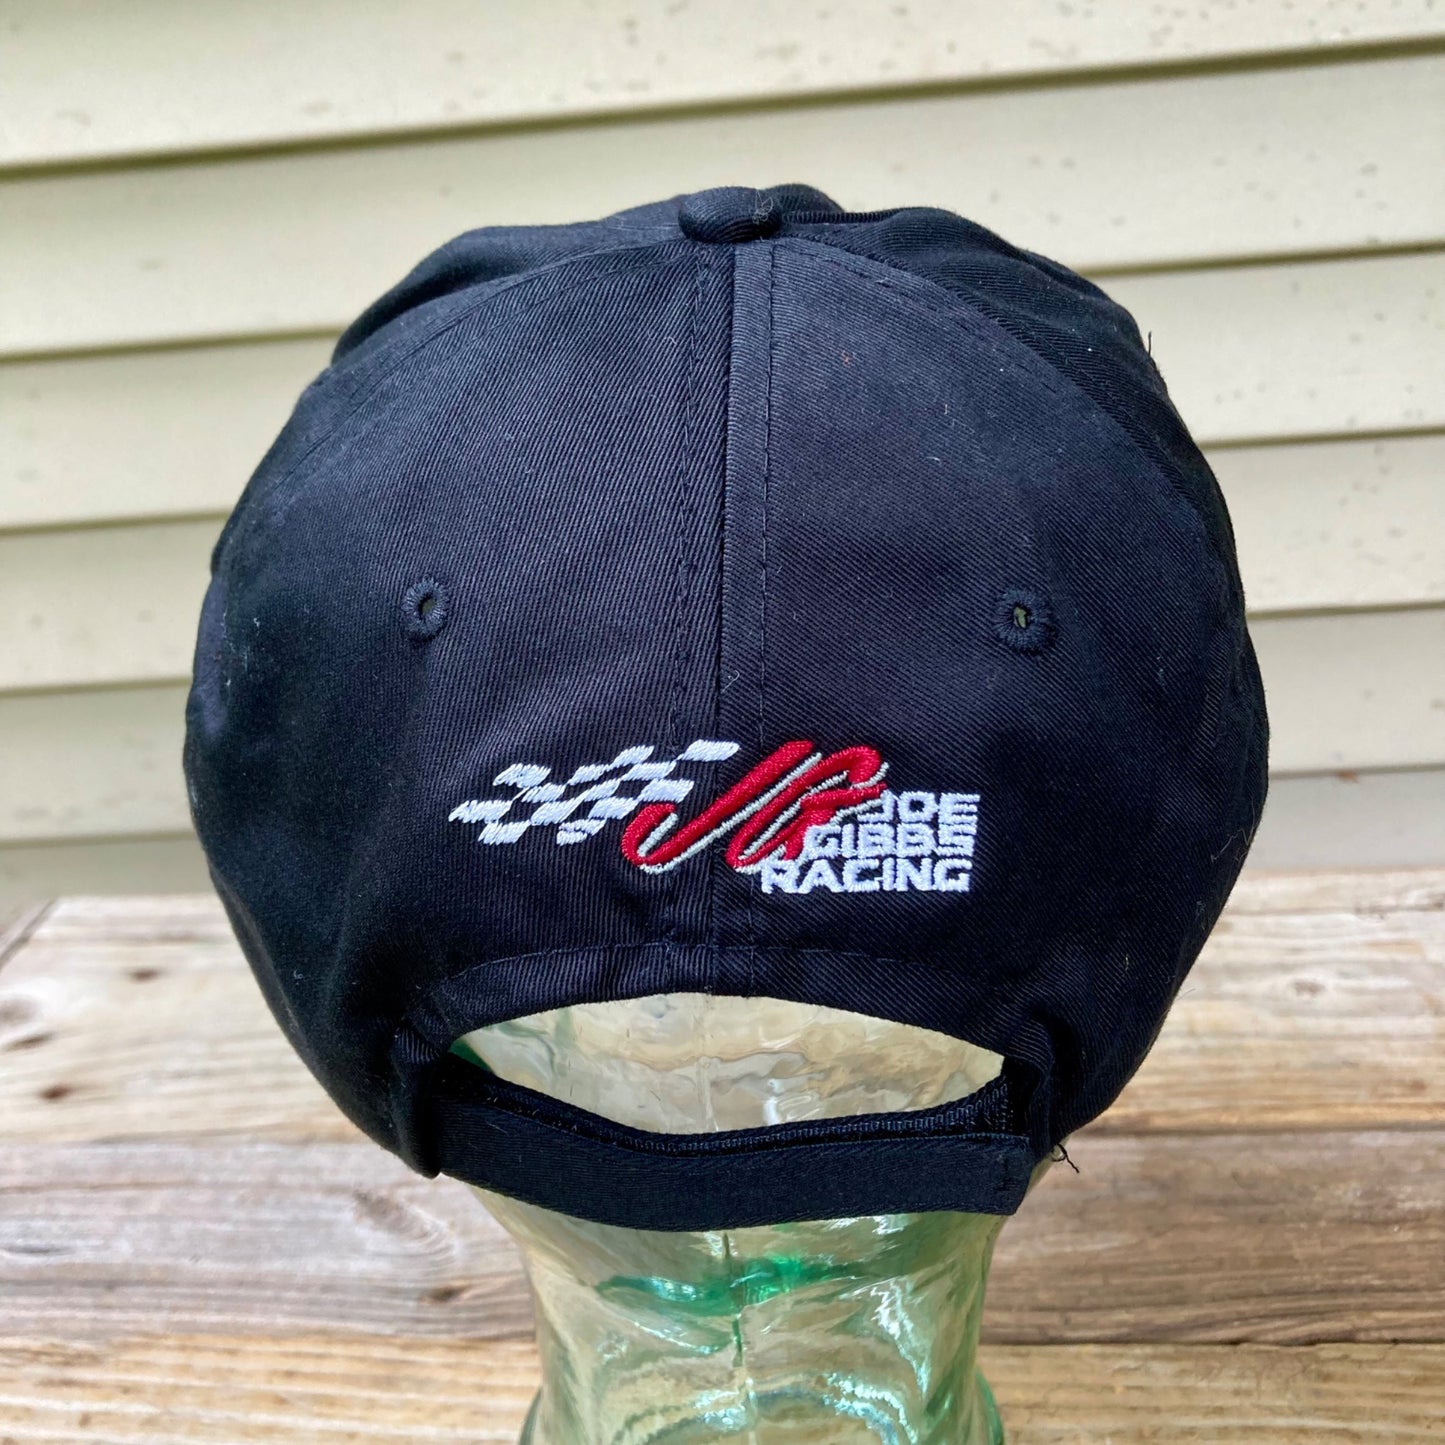 Denny Hamlin FedEx Racing Hat JOE GIBBS RACING SAMPLE w/COA #11 NASCAR